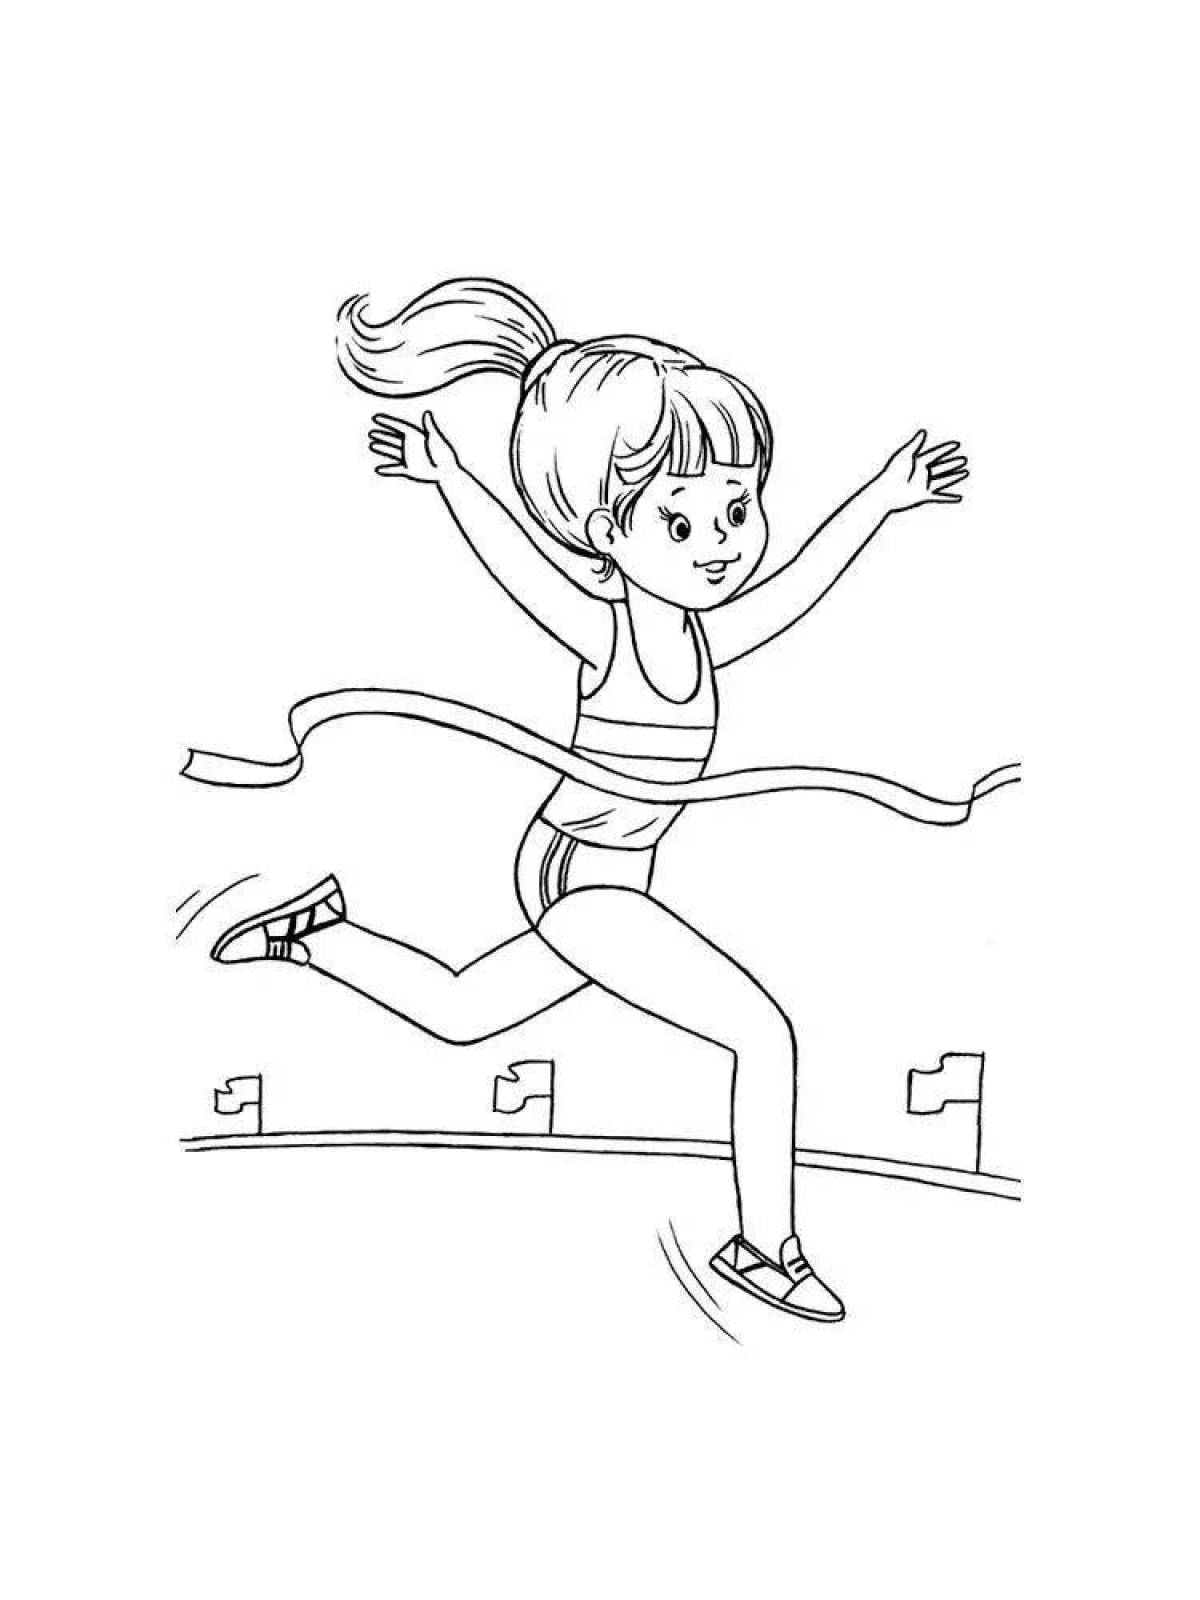 Раскраска для детей про спорт прыжок